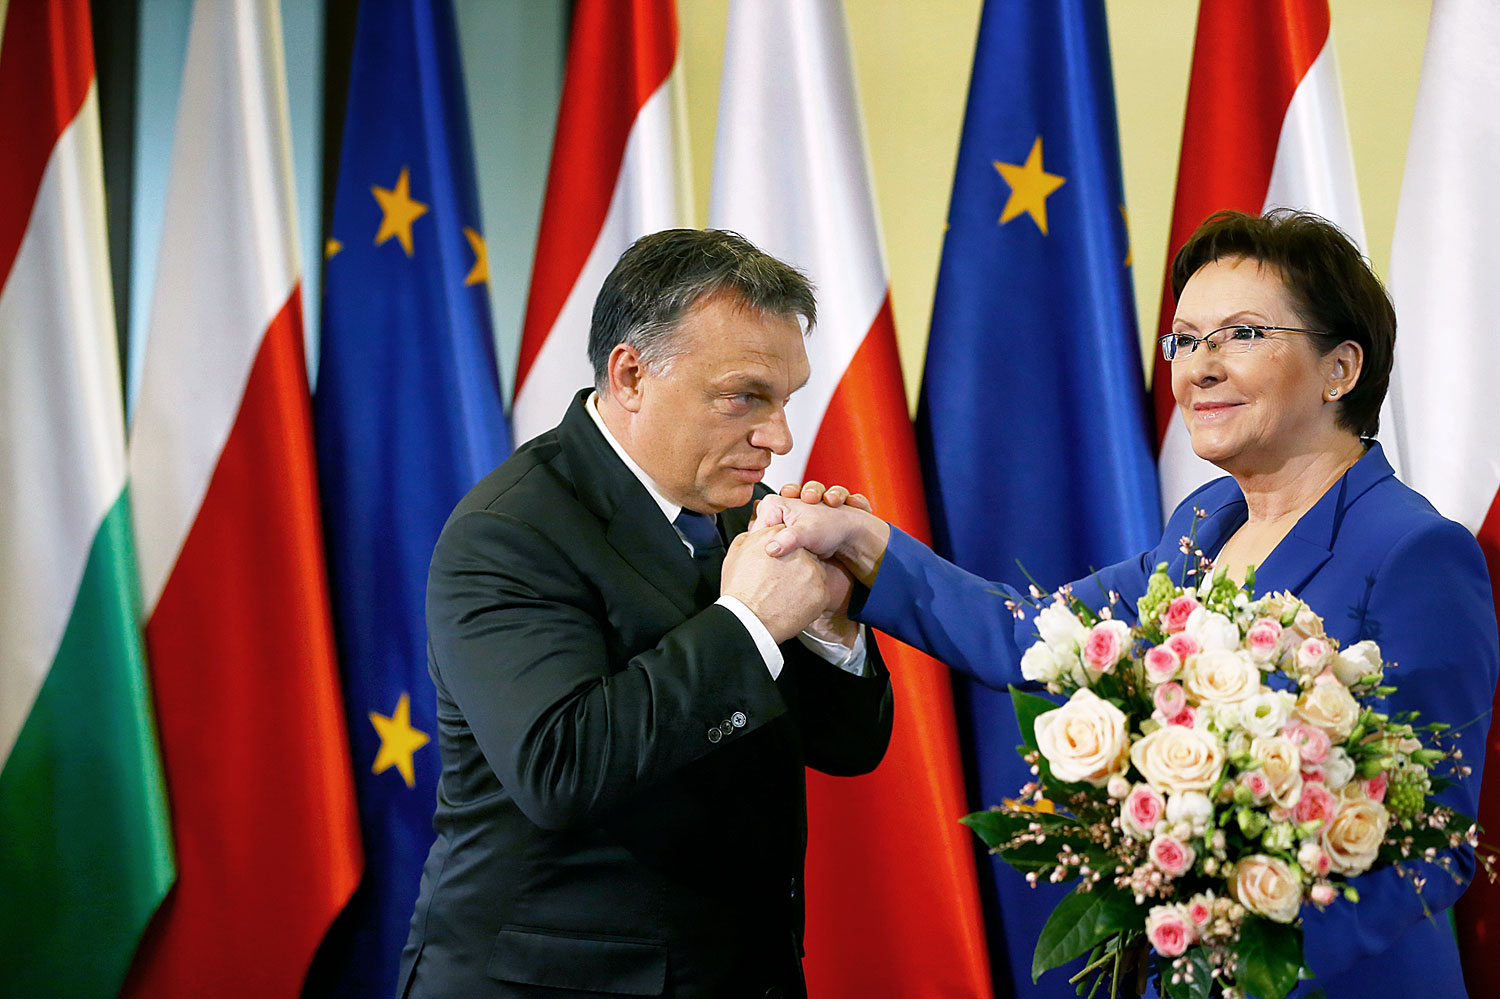 A magyar miniszterelnök virágot vitt, cserébe a nyilvánosság előtt kapott éles kritikát kollégájától a lengyel fővárosban